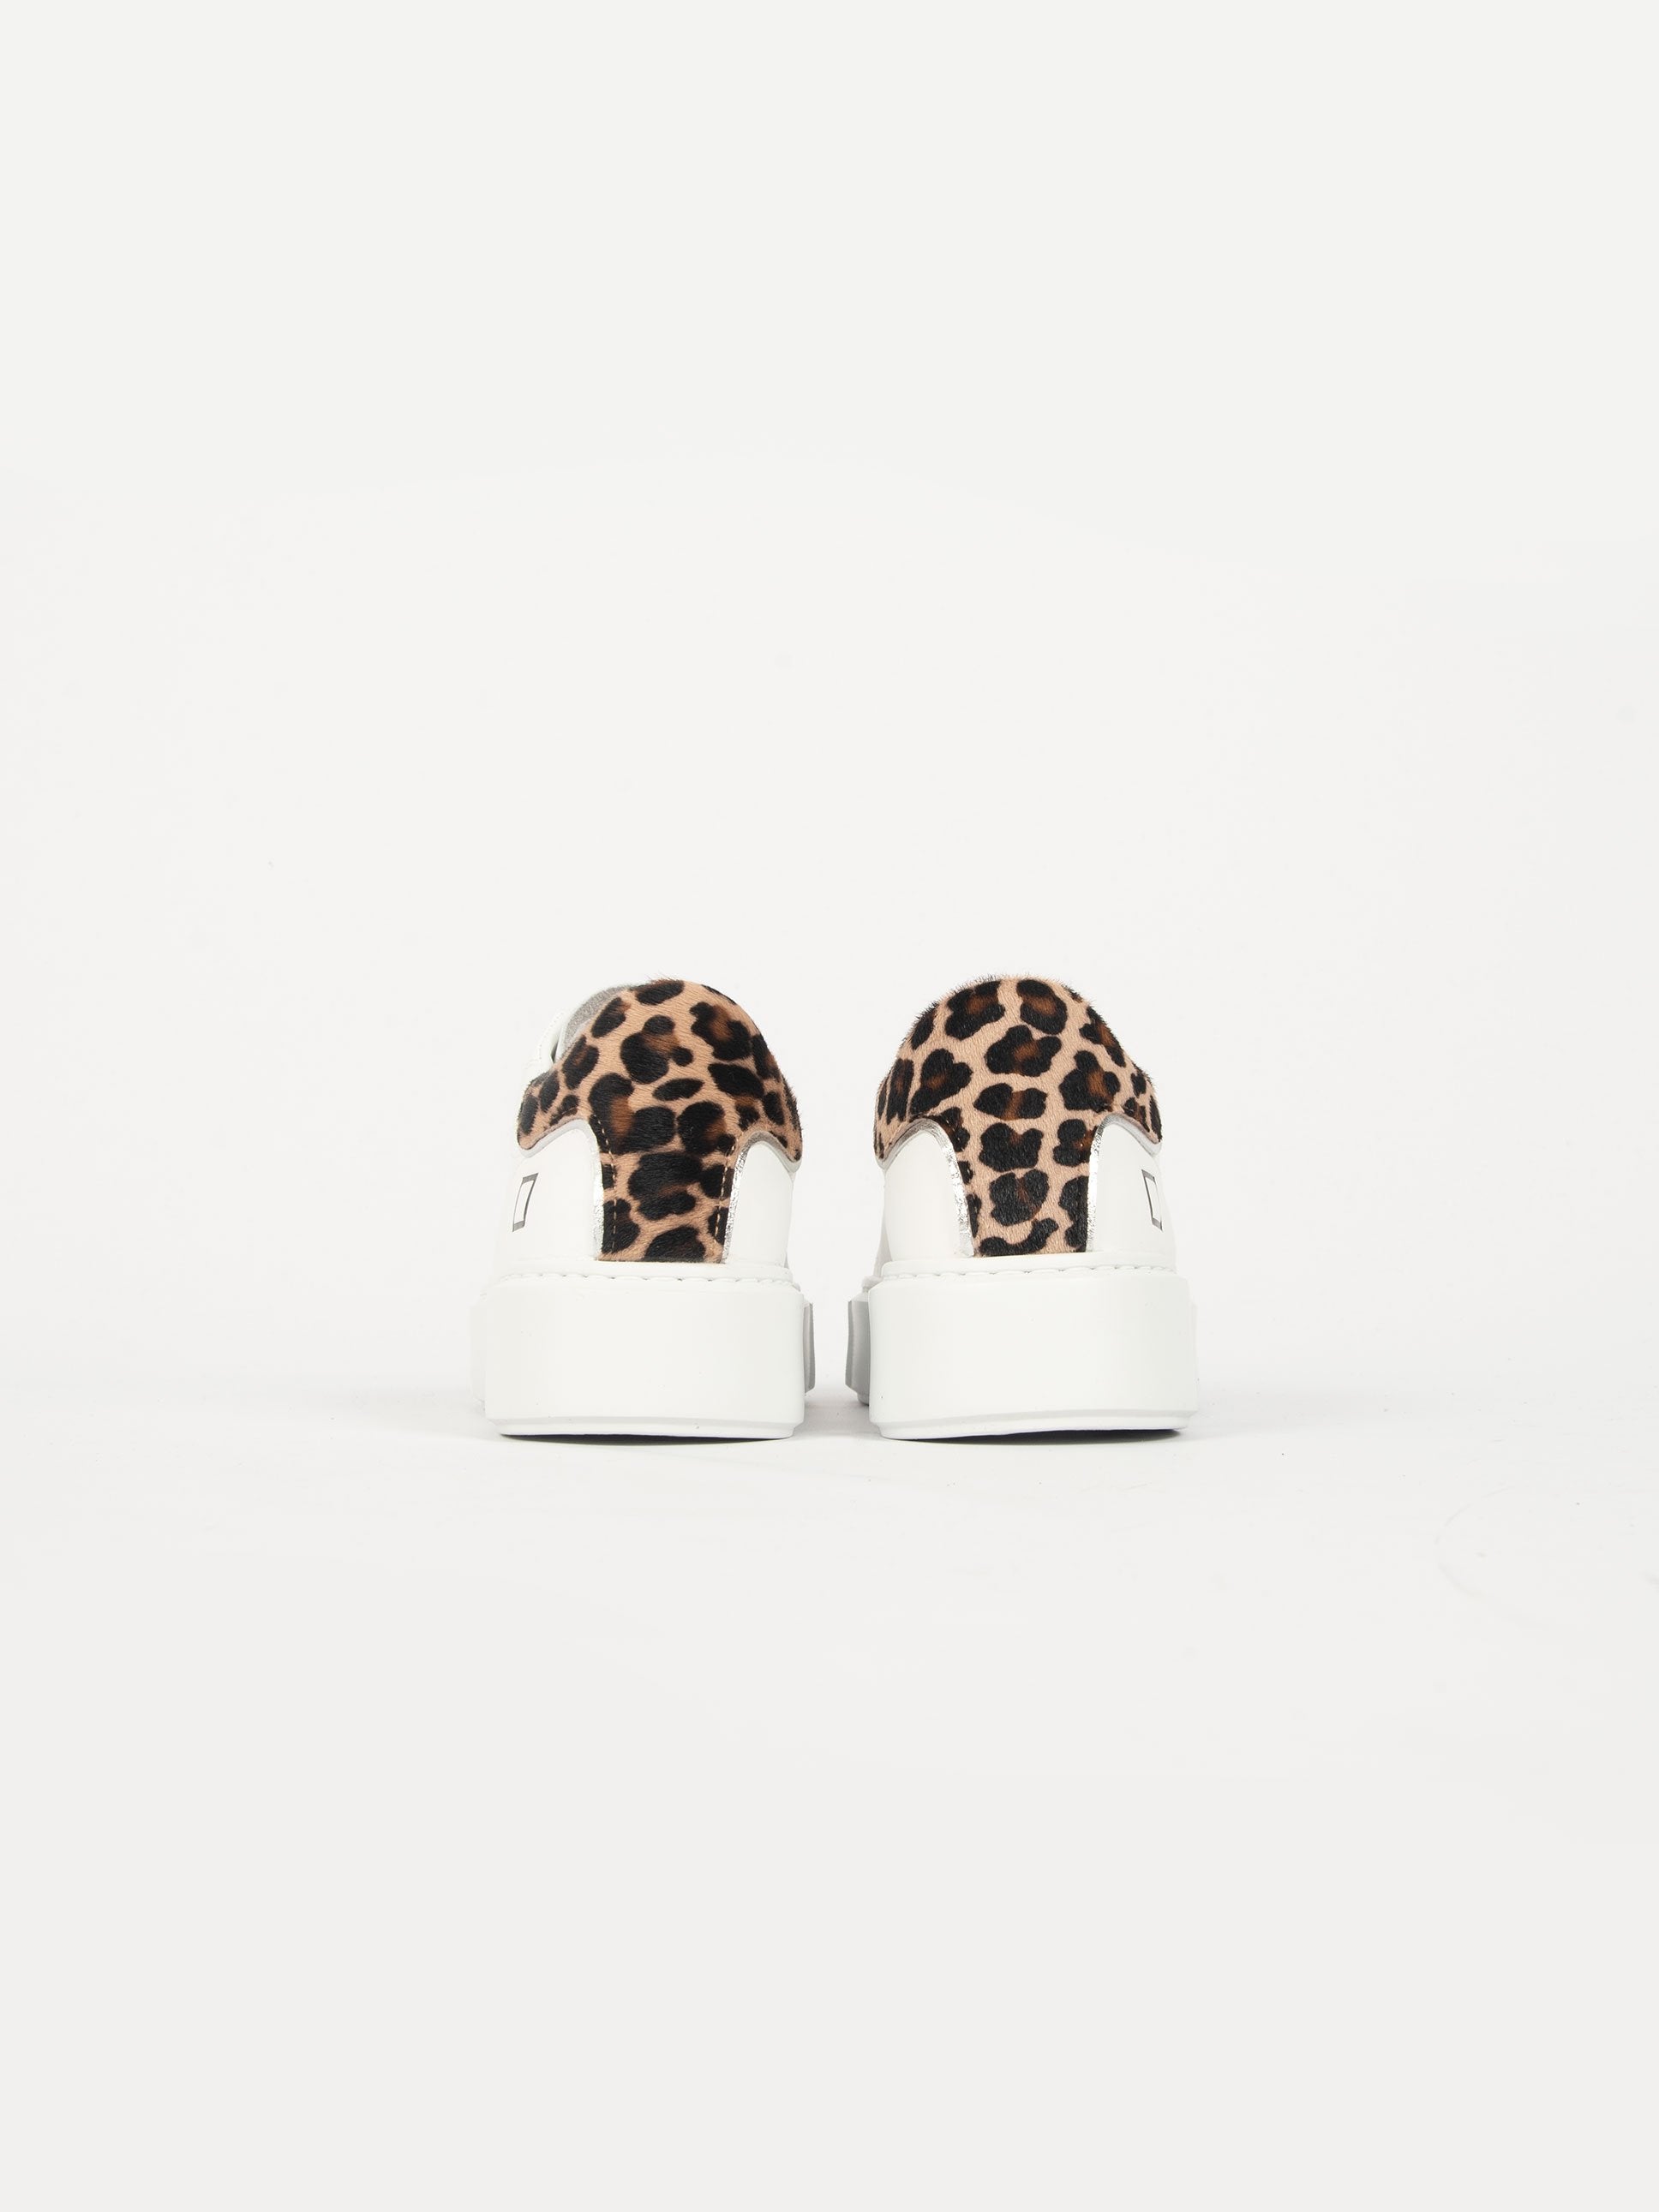 Sneakers 'Sfera Calf' Donna - Bianco/Leopardato